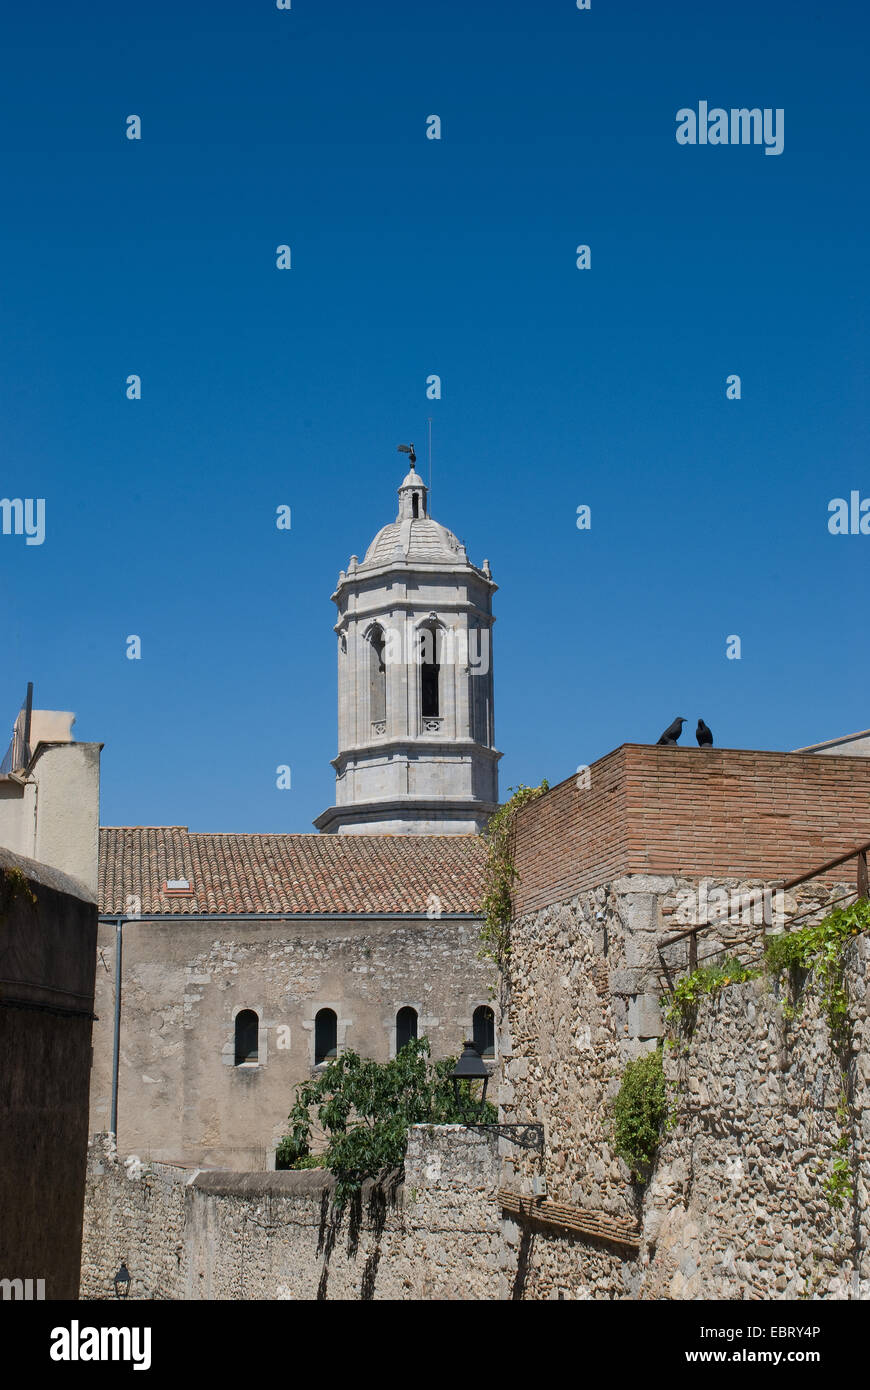 Tour située contre un ciel bleu vif dans la cité médiévale de Gérone en Catalogne en Espagne Banque D'Images